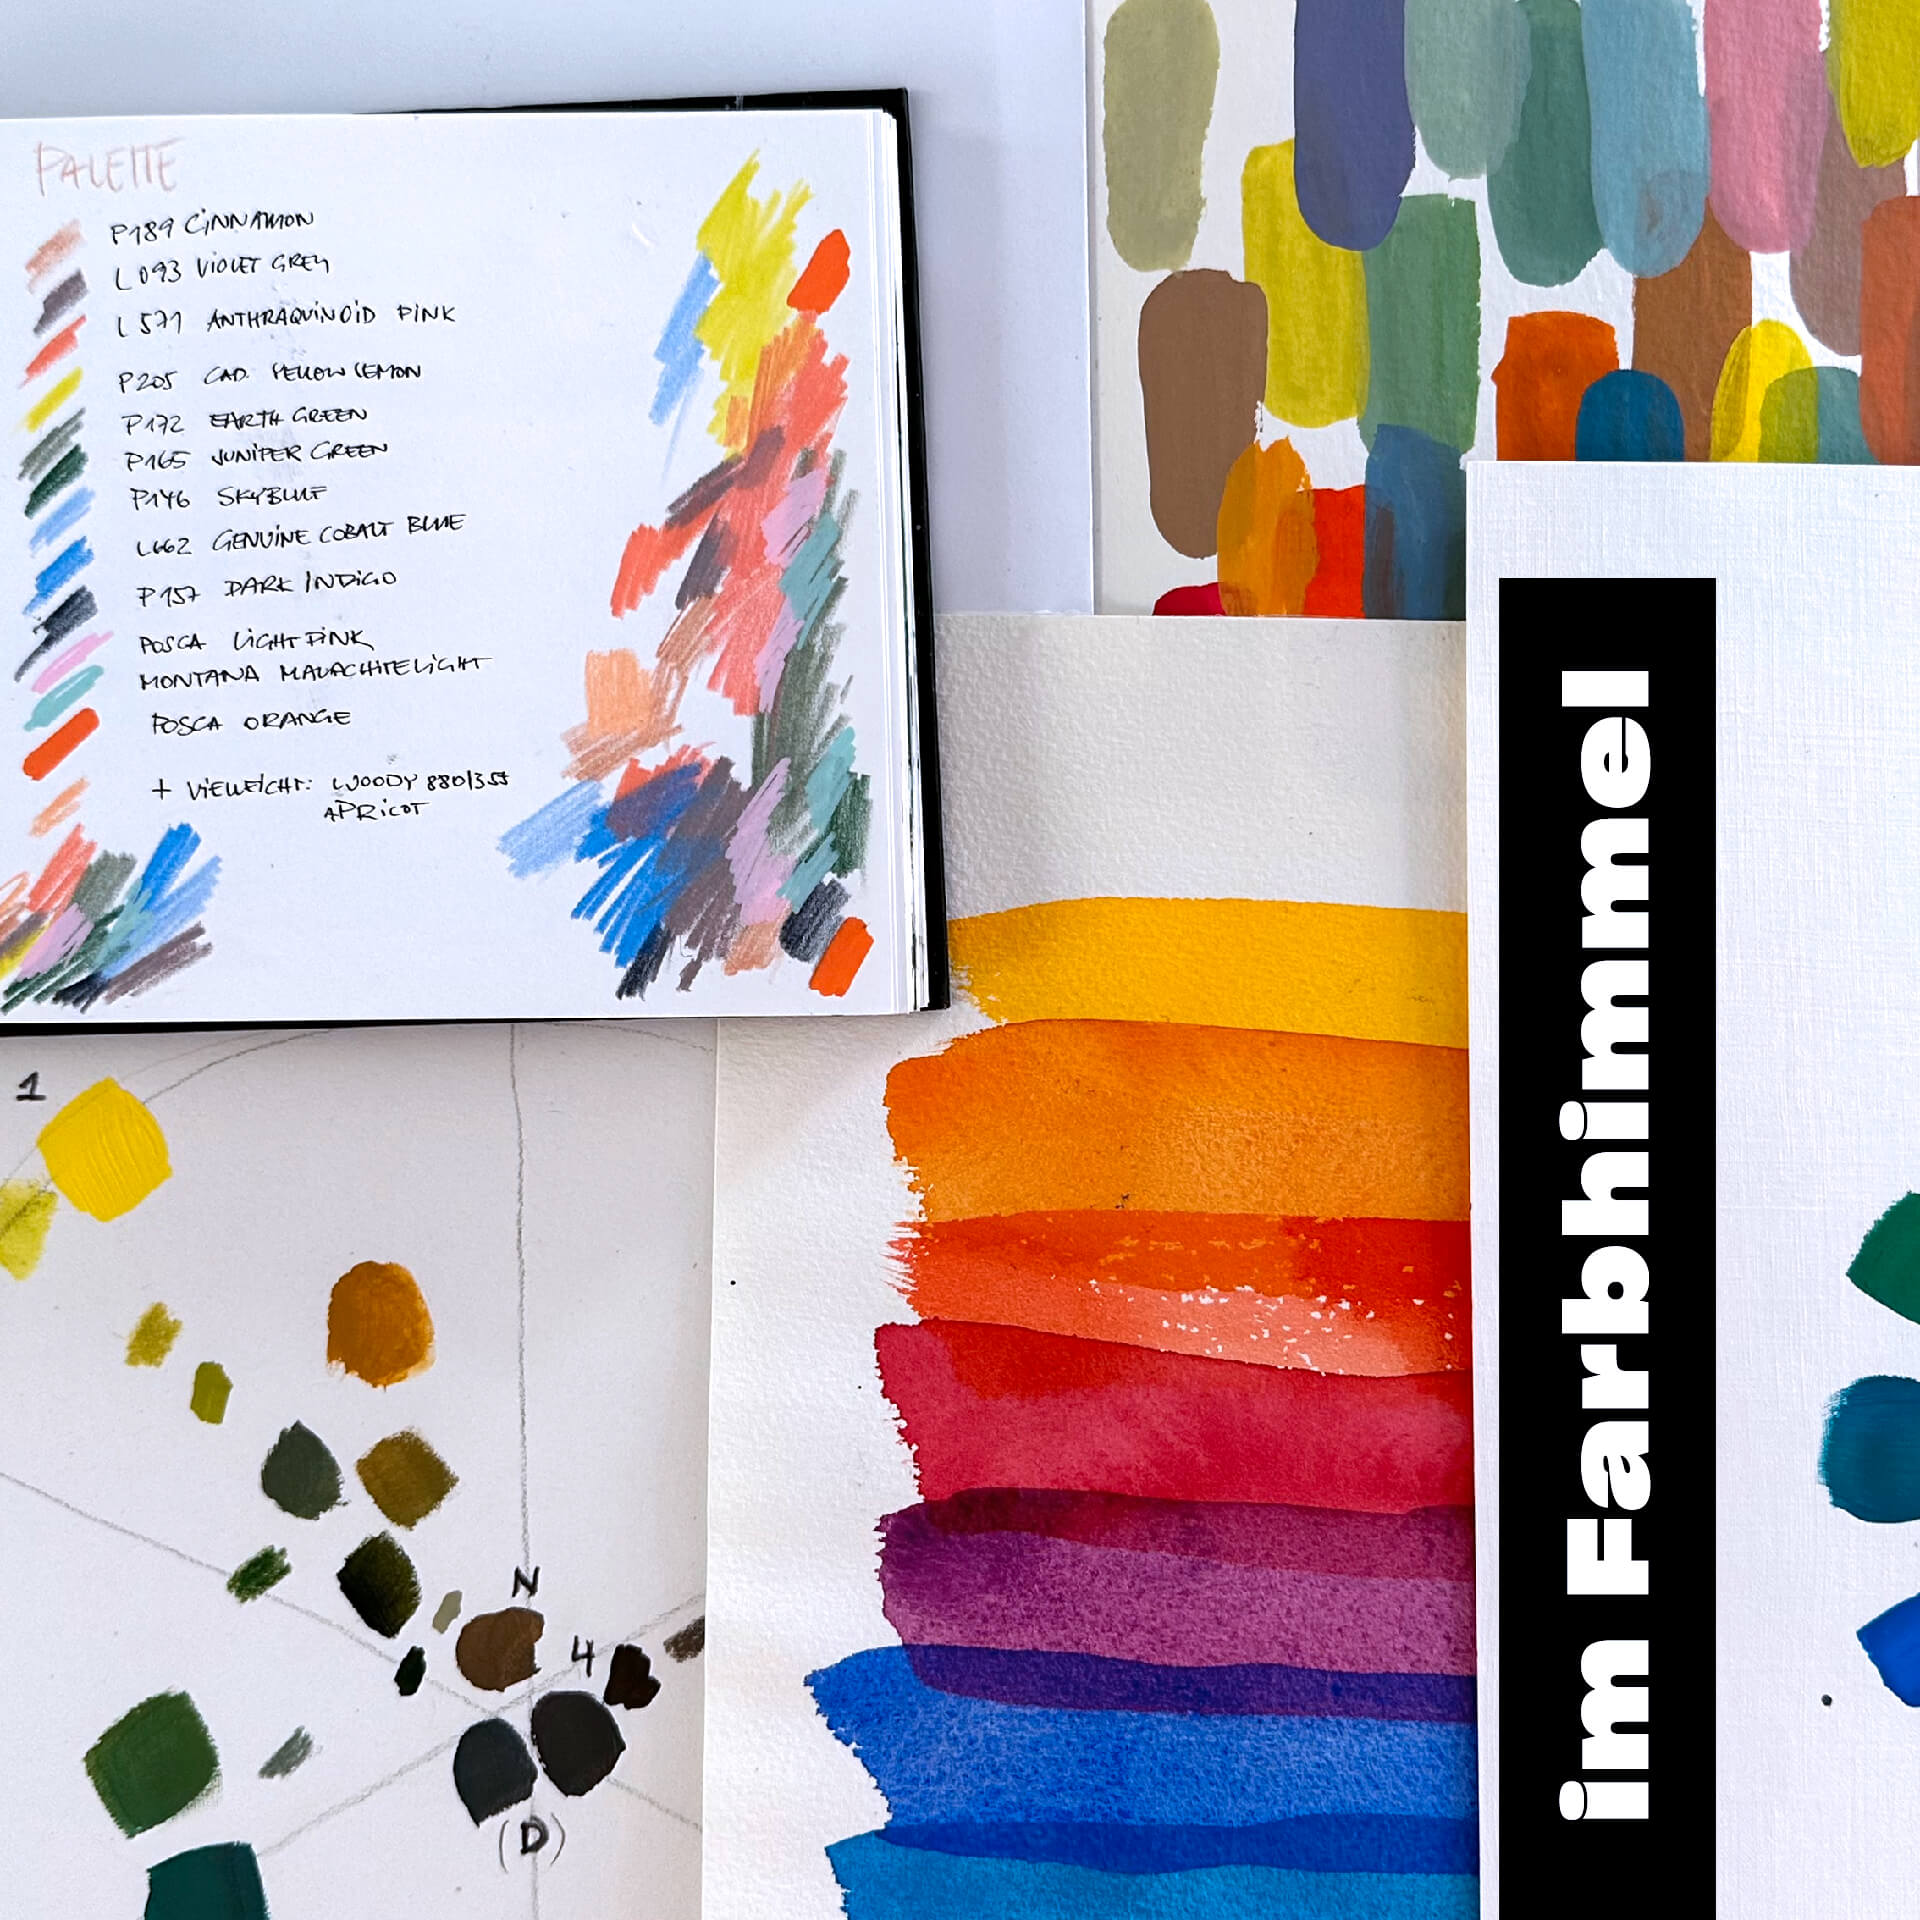 Kurs Farben mischen lernen - Tonwerte, Farbtemperatur, Farbsättigung